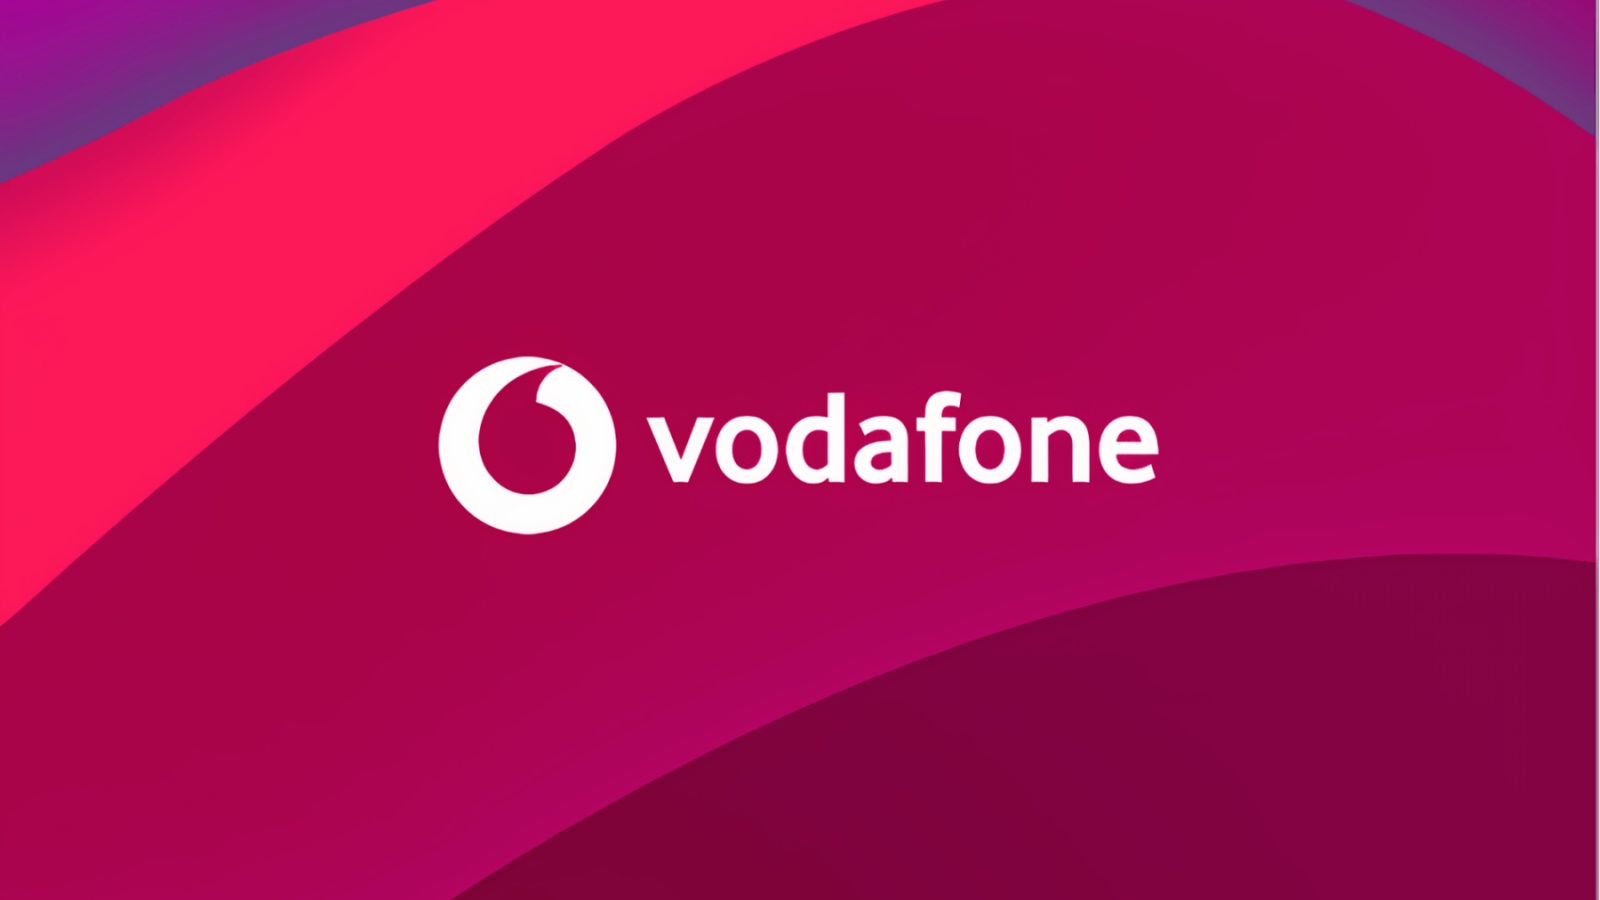 Vodafone Anuntul SPECIAL Clienti Beneficiul Oferit Romanilor